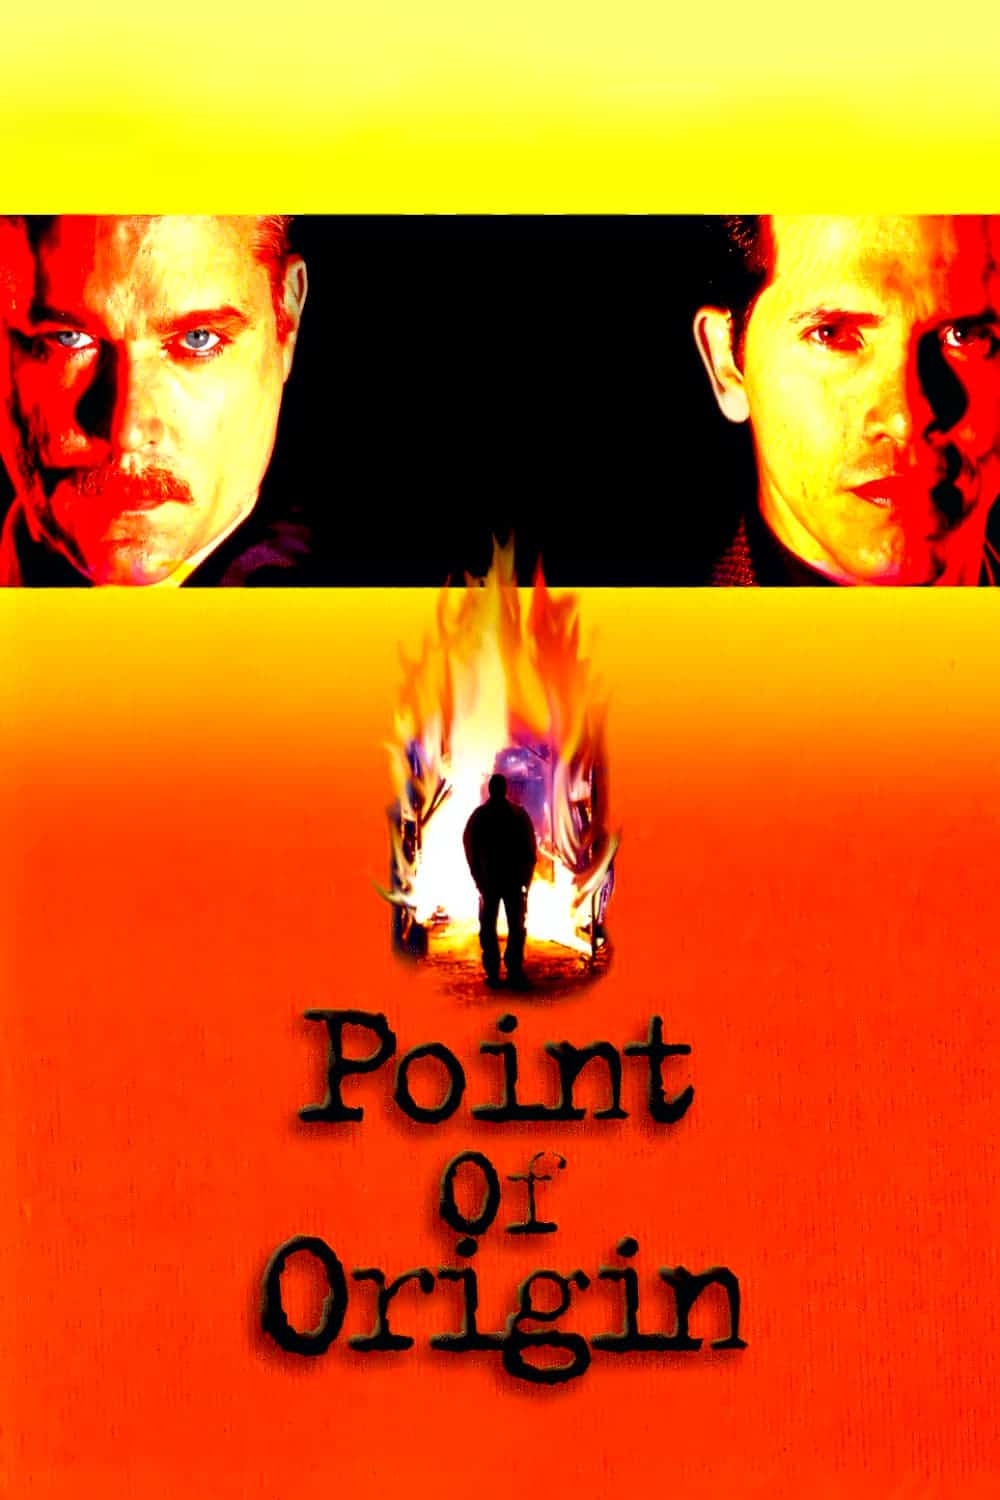 Point of Origin, 2002 